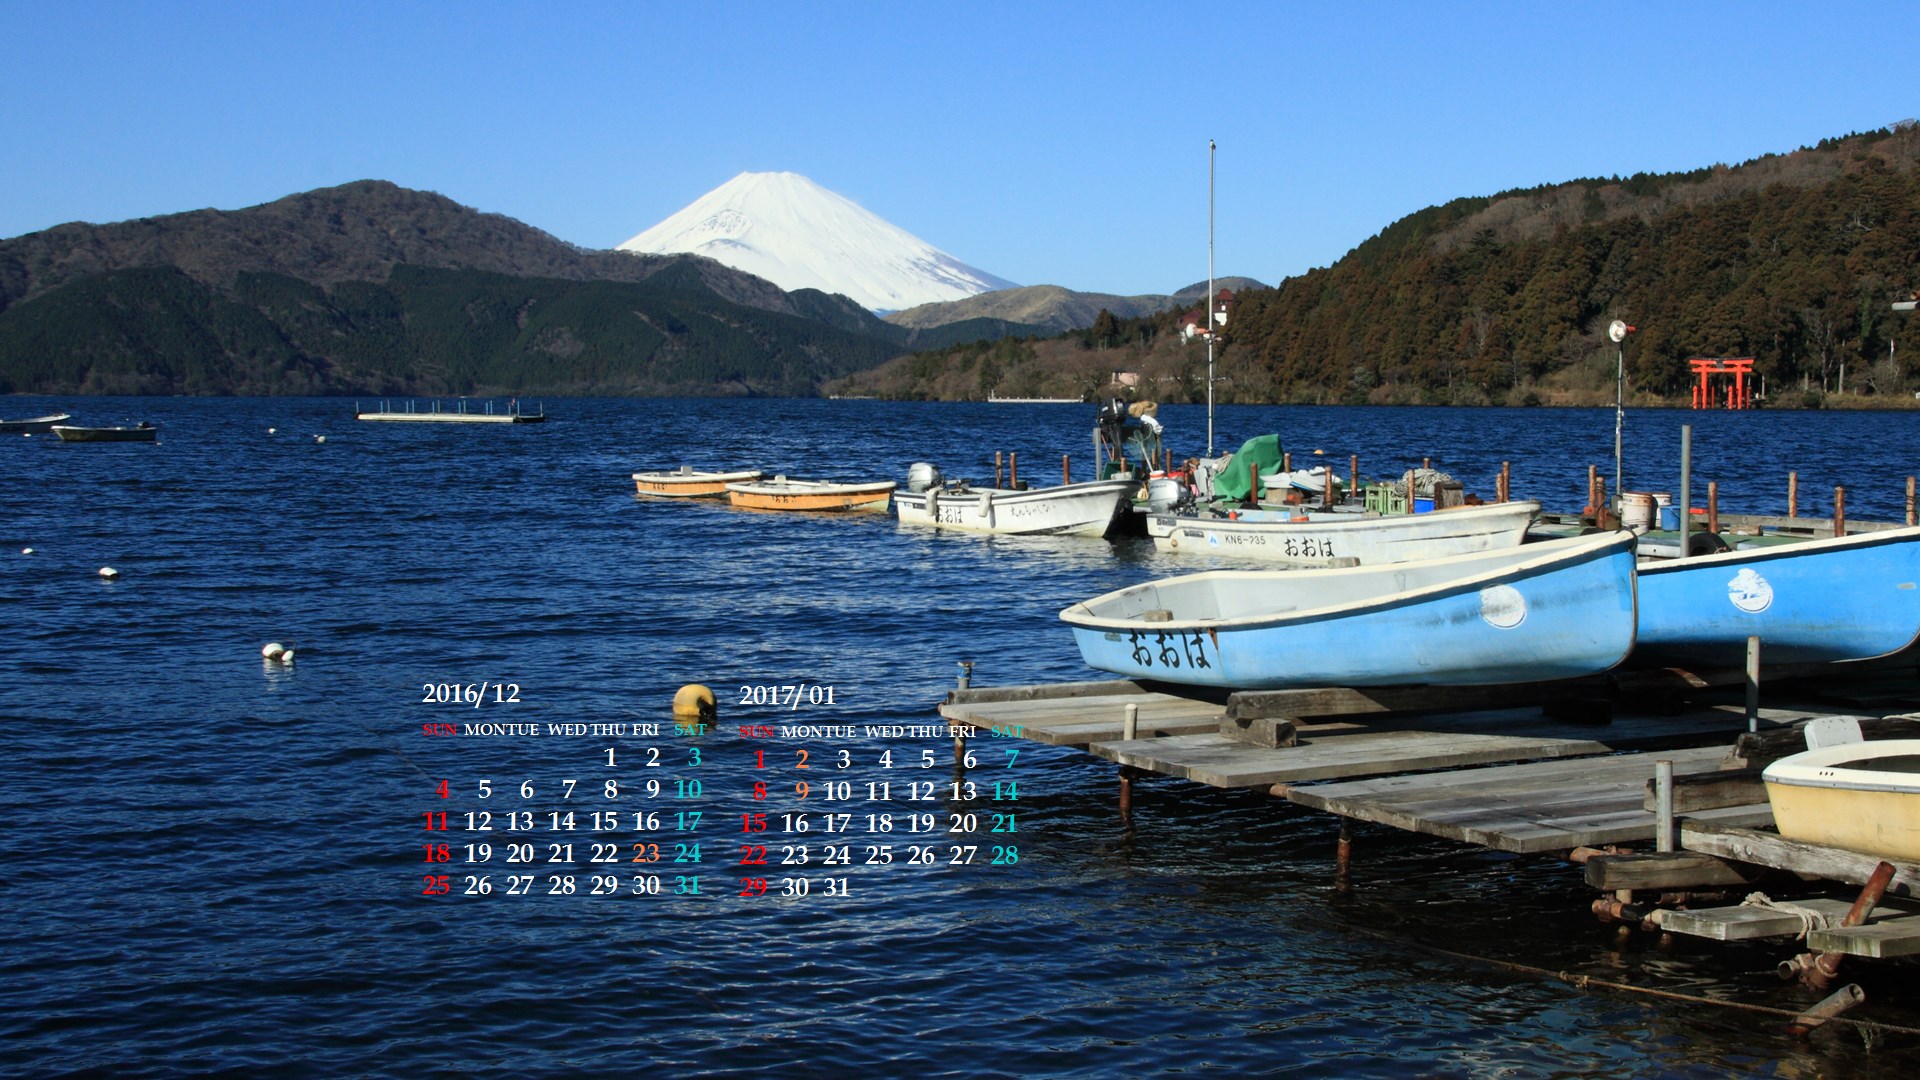 芦ノ湖と富士山 ２０１６年１２月カレンダー壁紙 カレンダー壁紙館 昴 無料ワイド